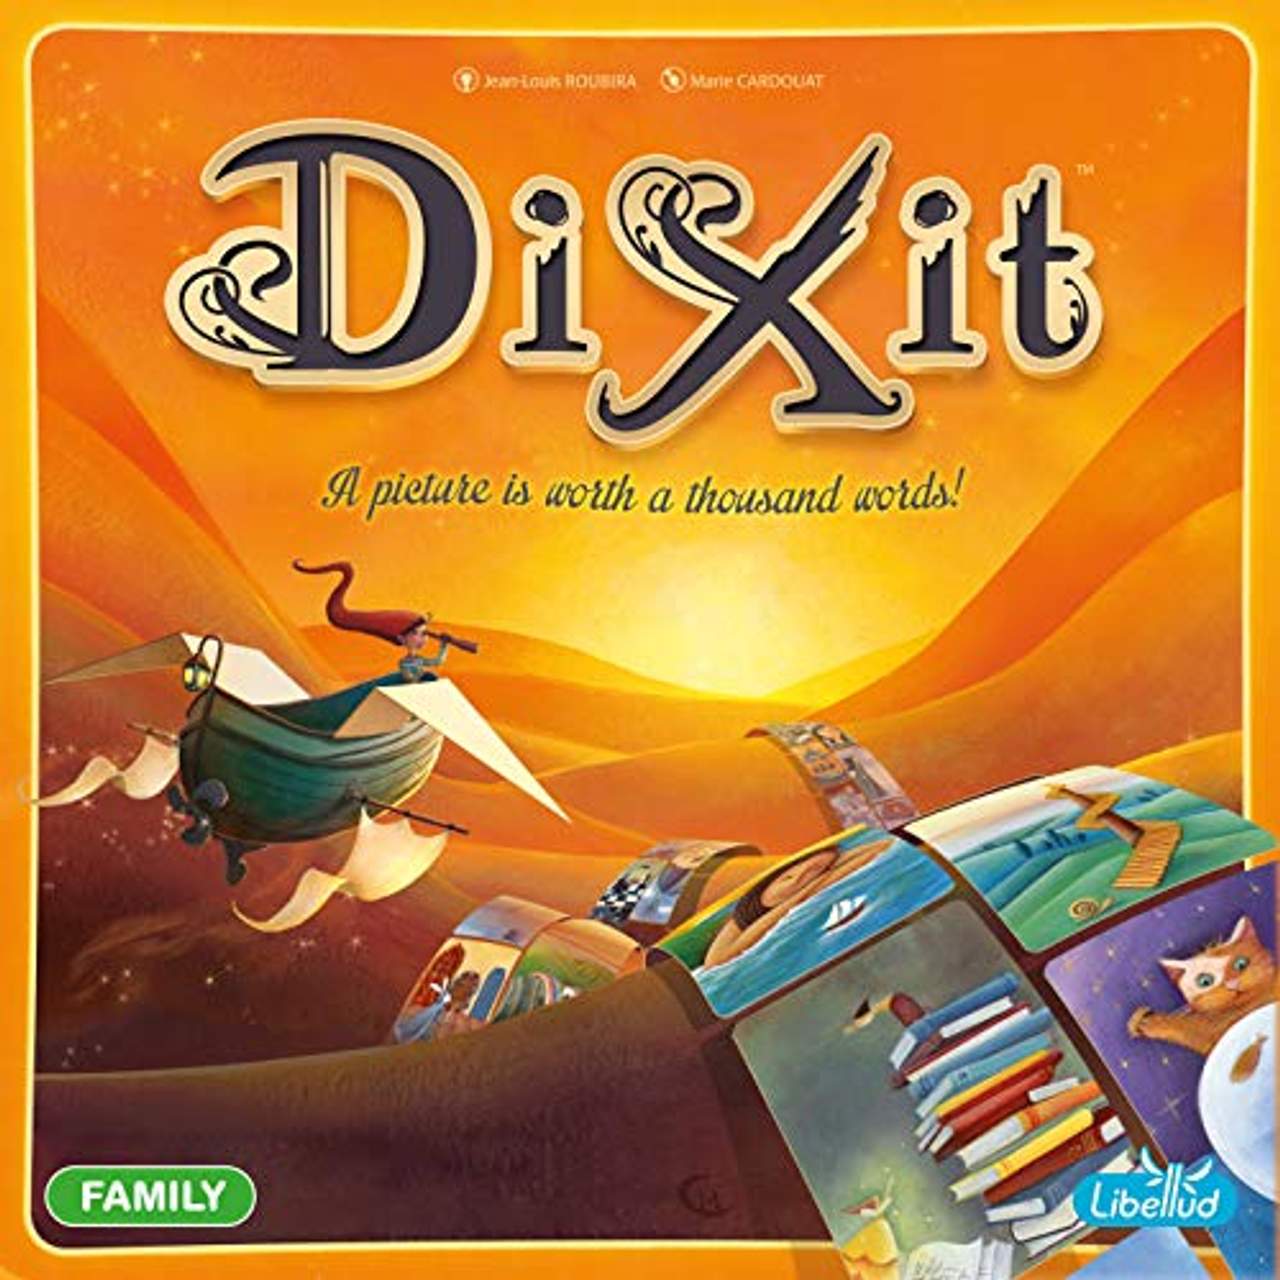 Dixit, Spiel des Jahres 2010